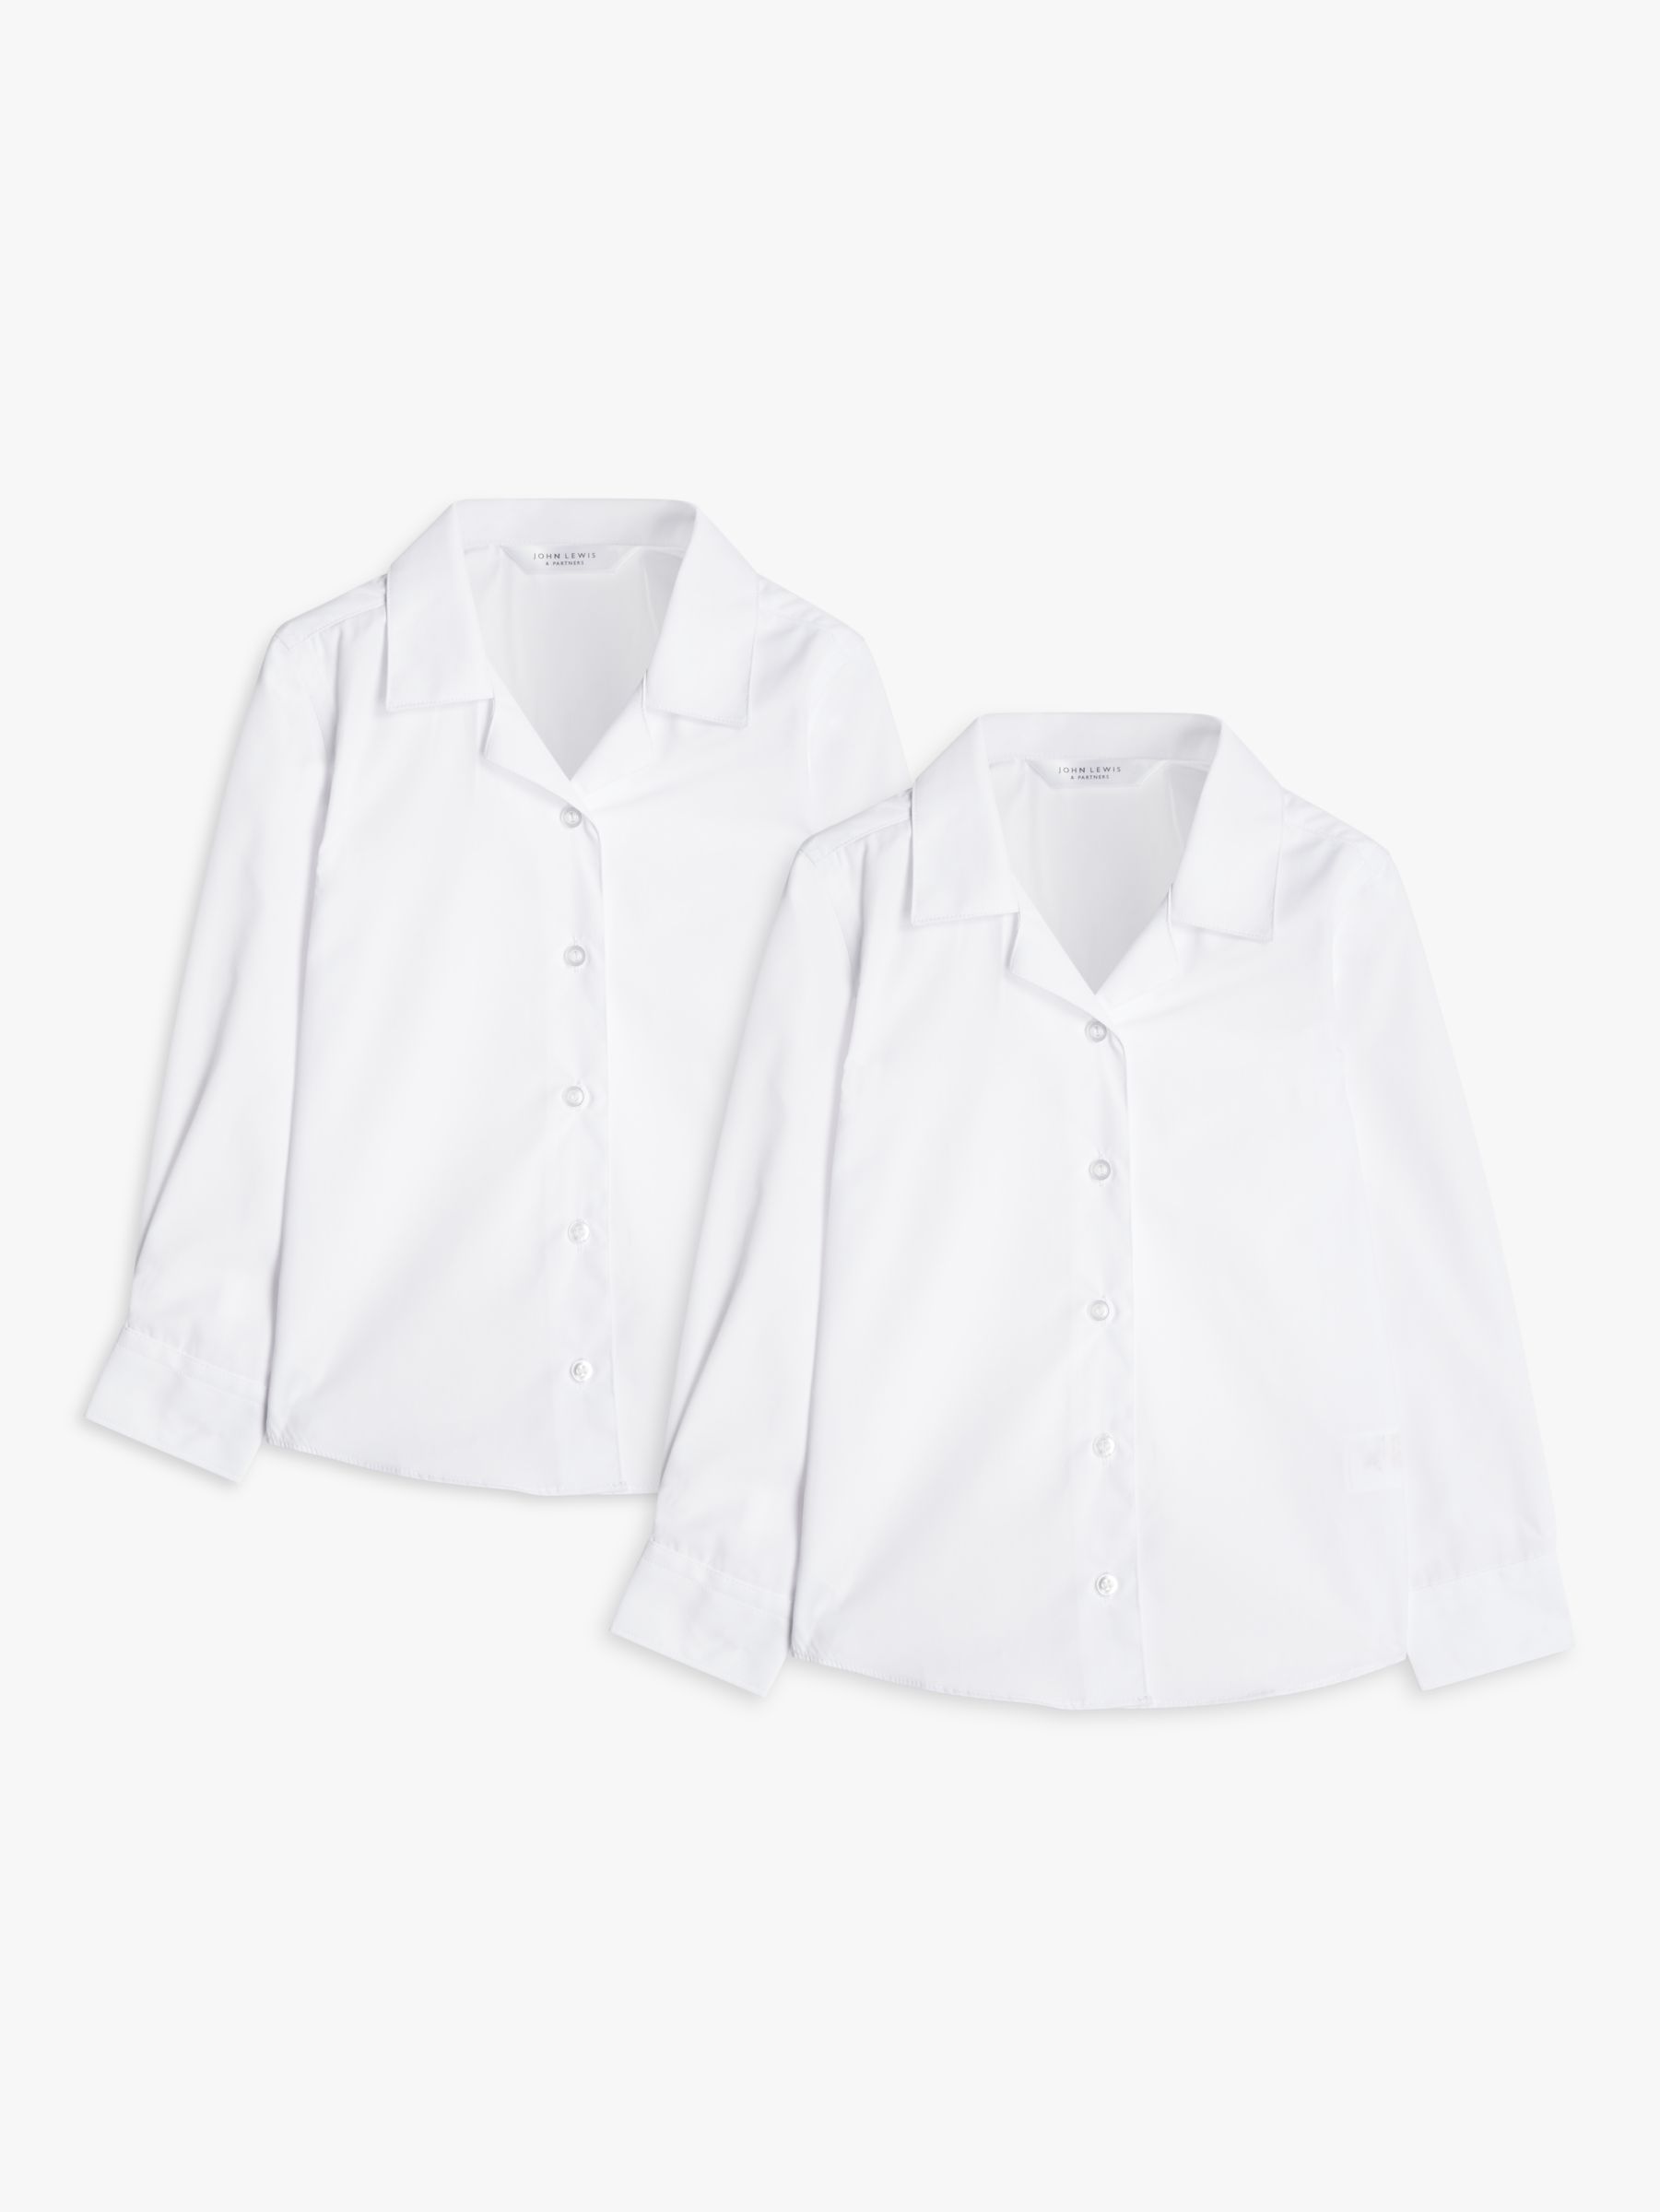 Buy John Lewis Girls' Long Sleeved Open Neck Blouse, Pack of 2, White Online at johnlewis.com